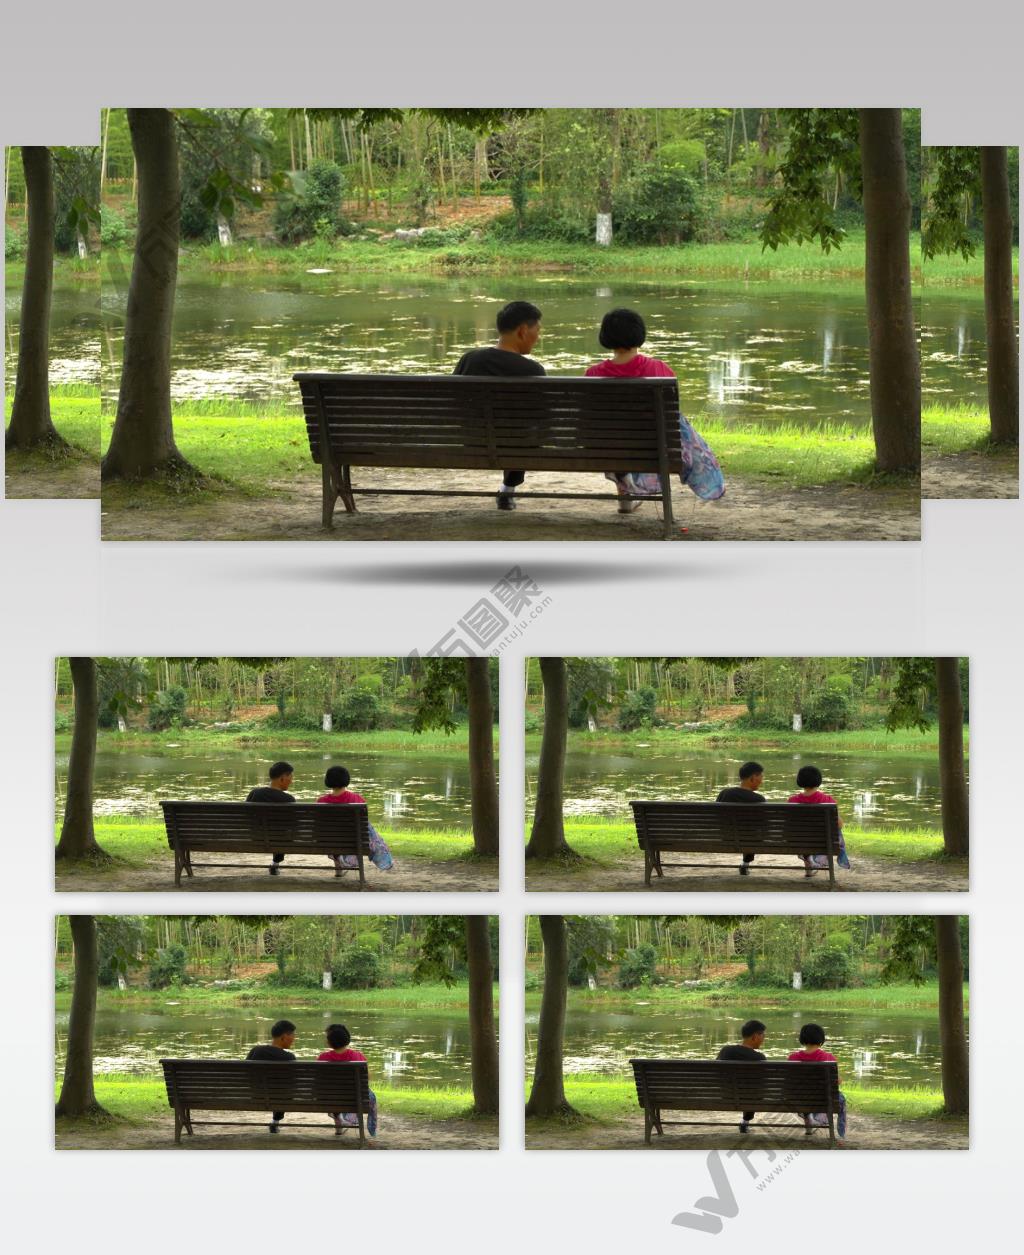 老年人夫妻在公园座椅上休息4K视频素材